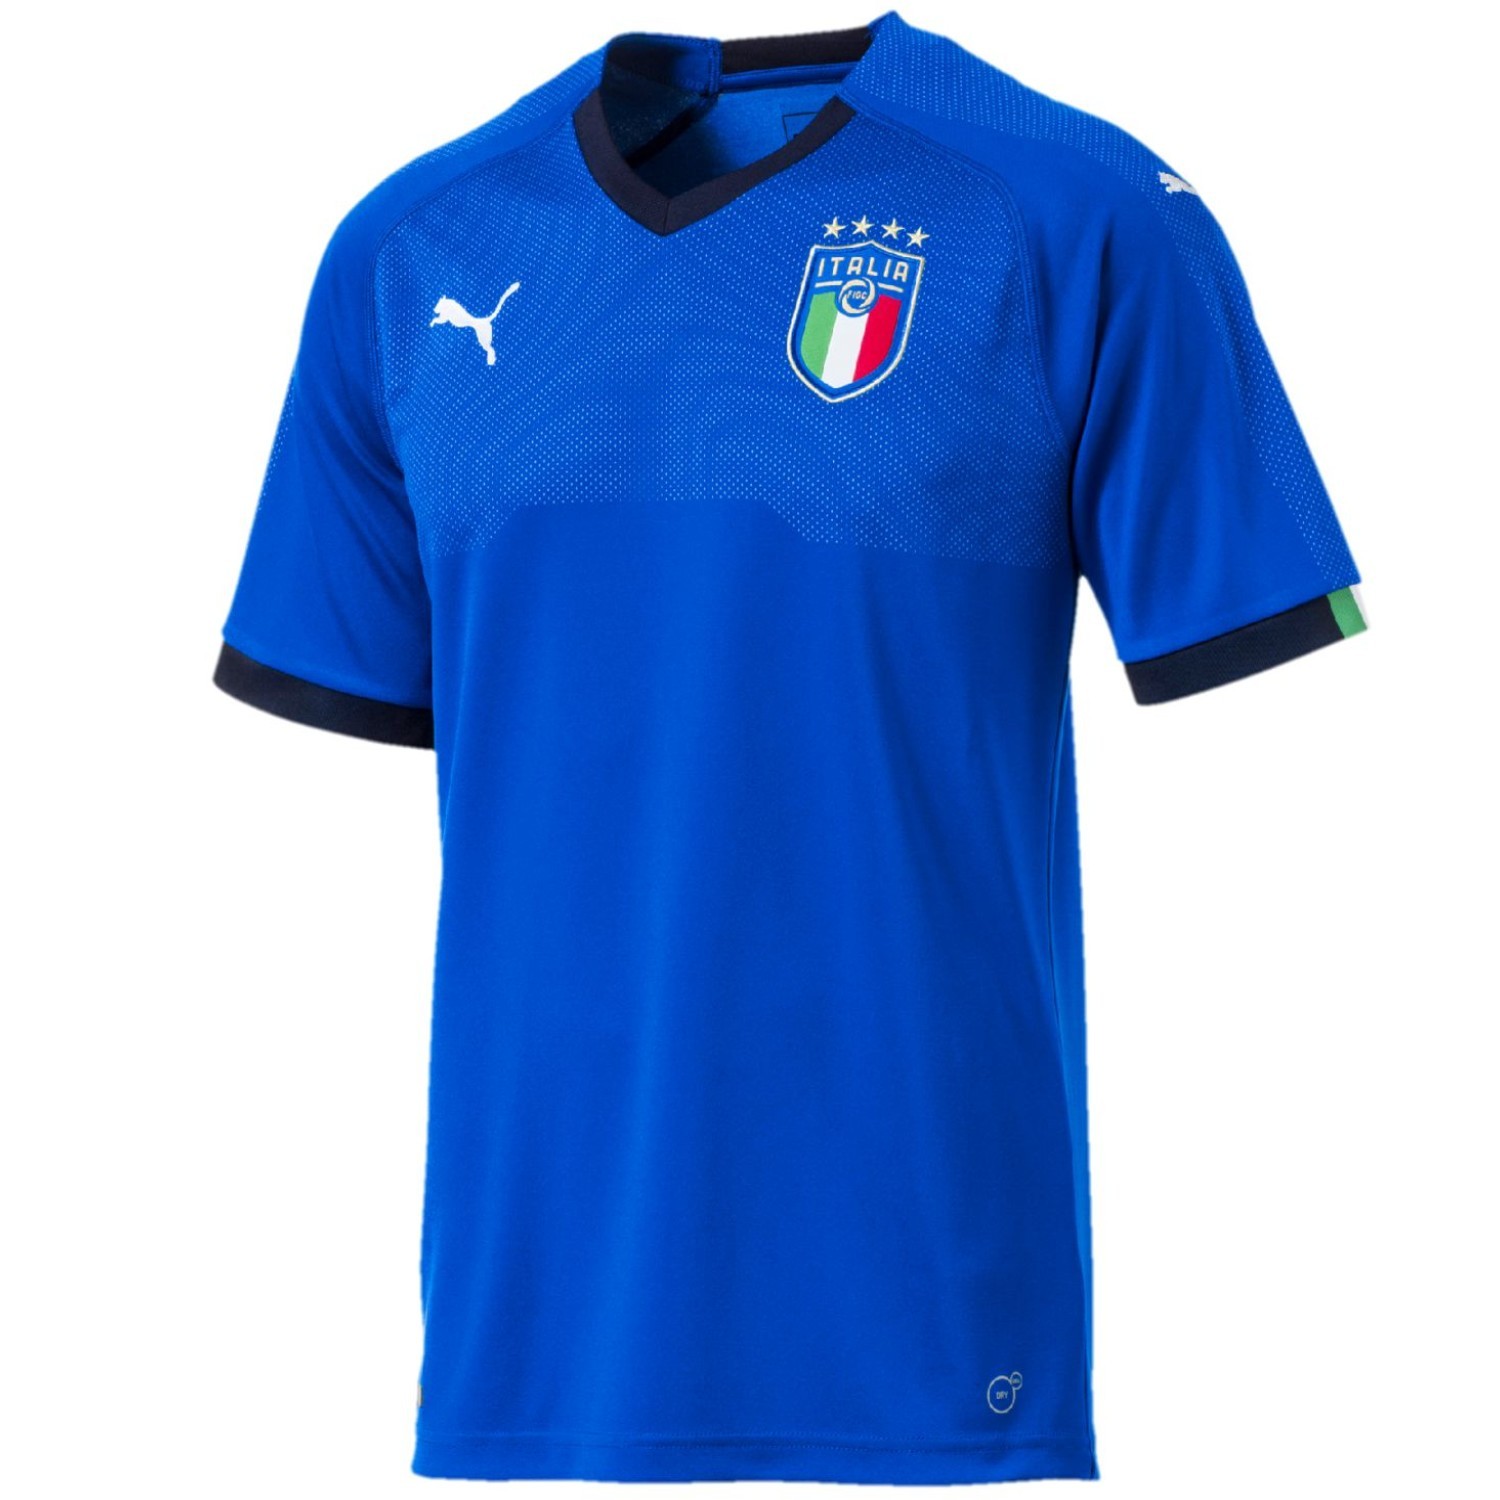 Camiseta futbol seleccion de Italia primera 2018/19 - Puma